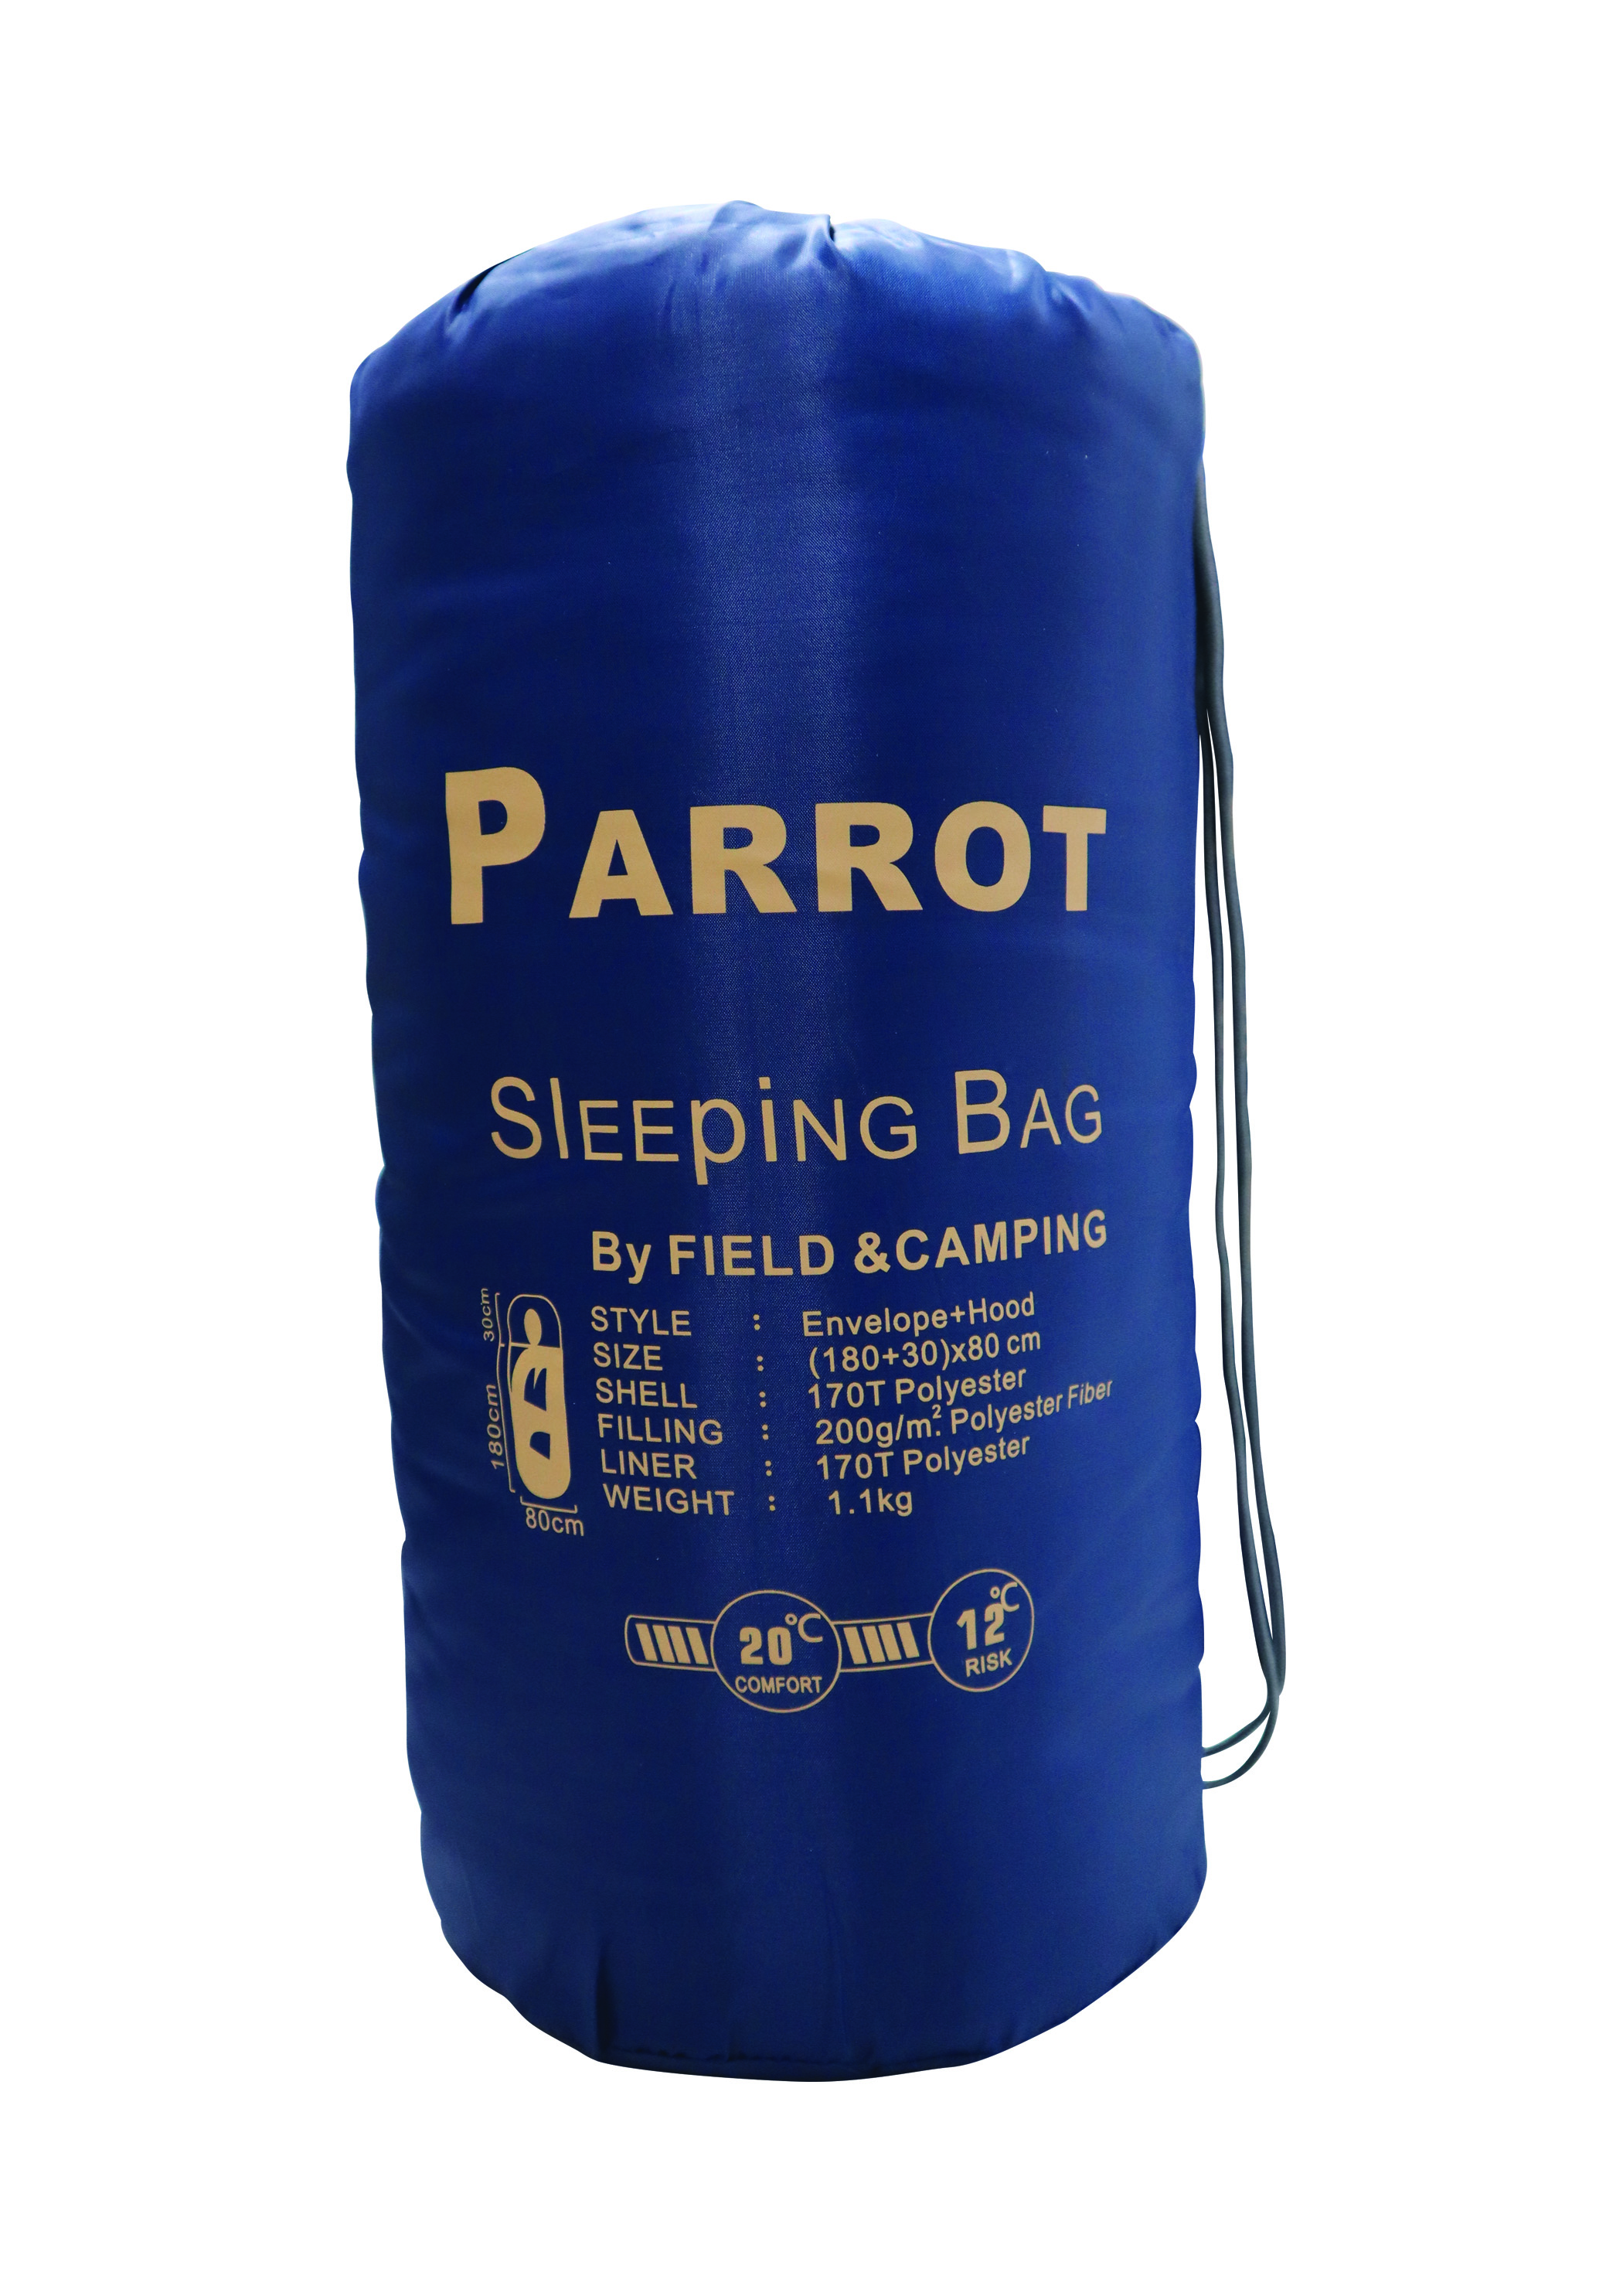 ถุงนอน Parrot สีกรม